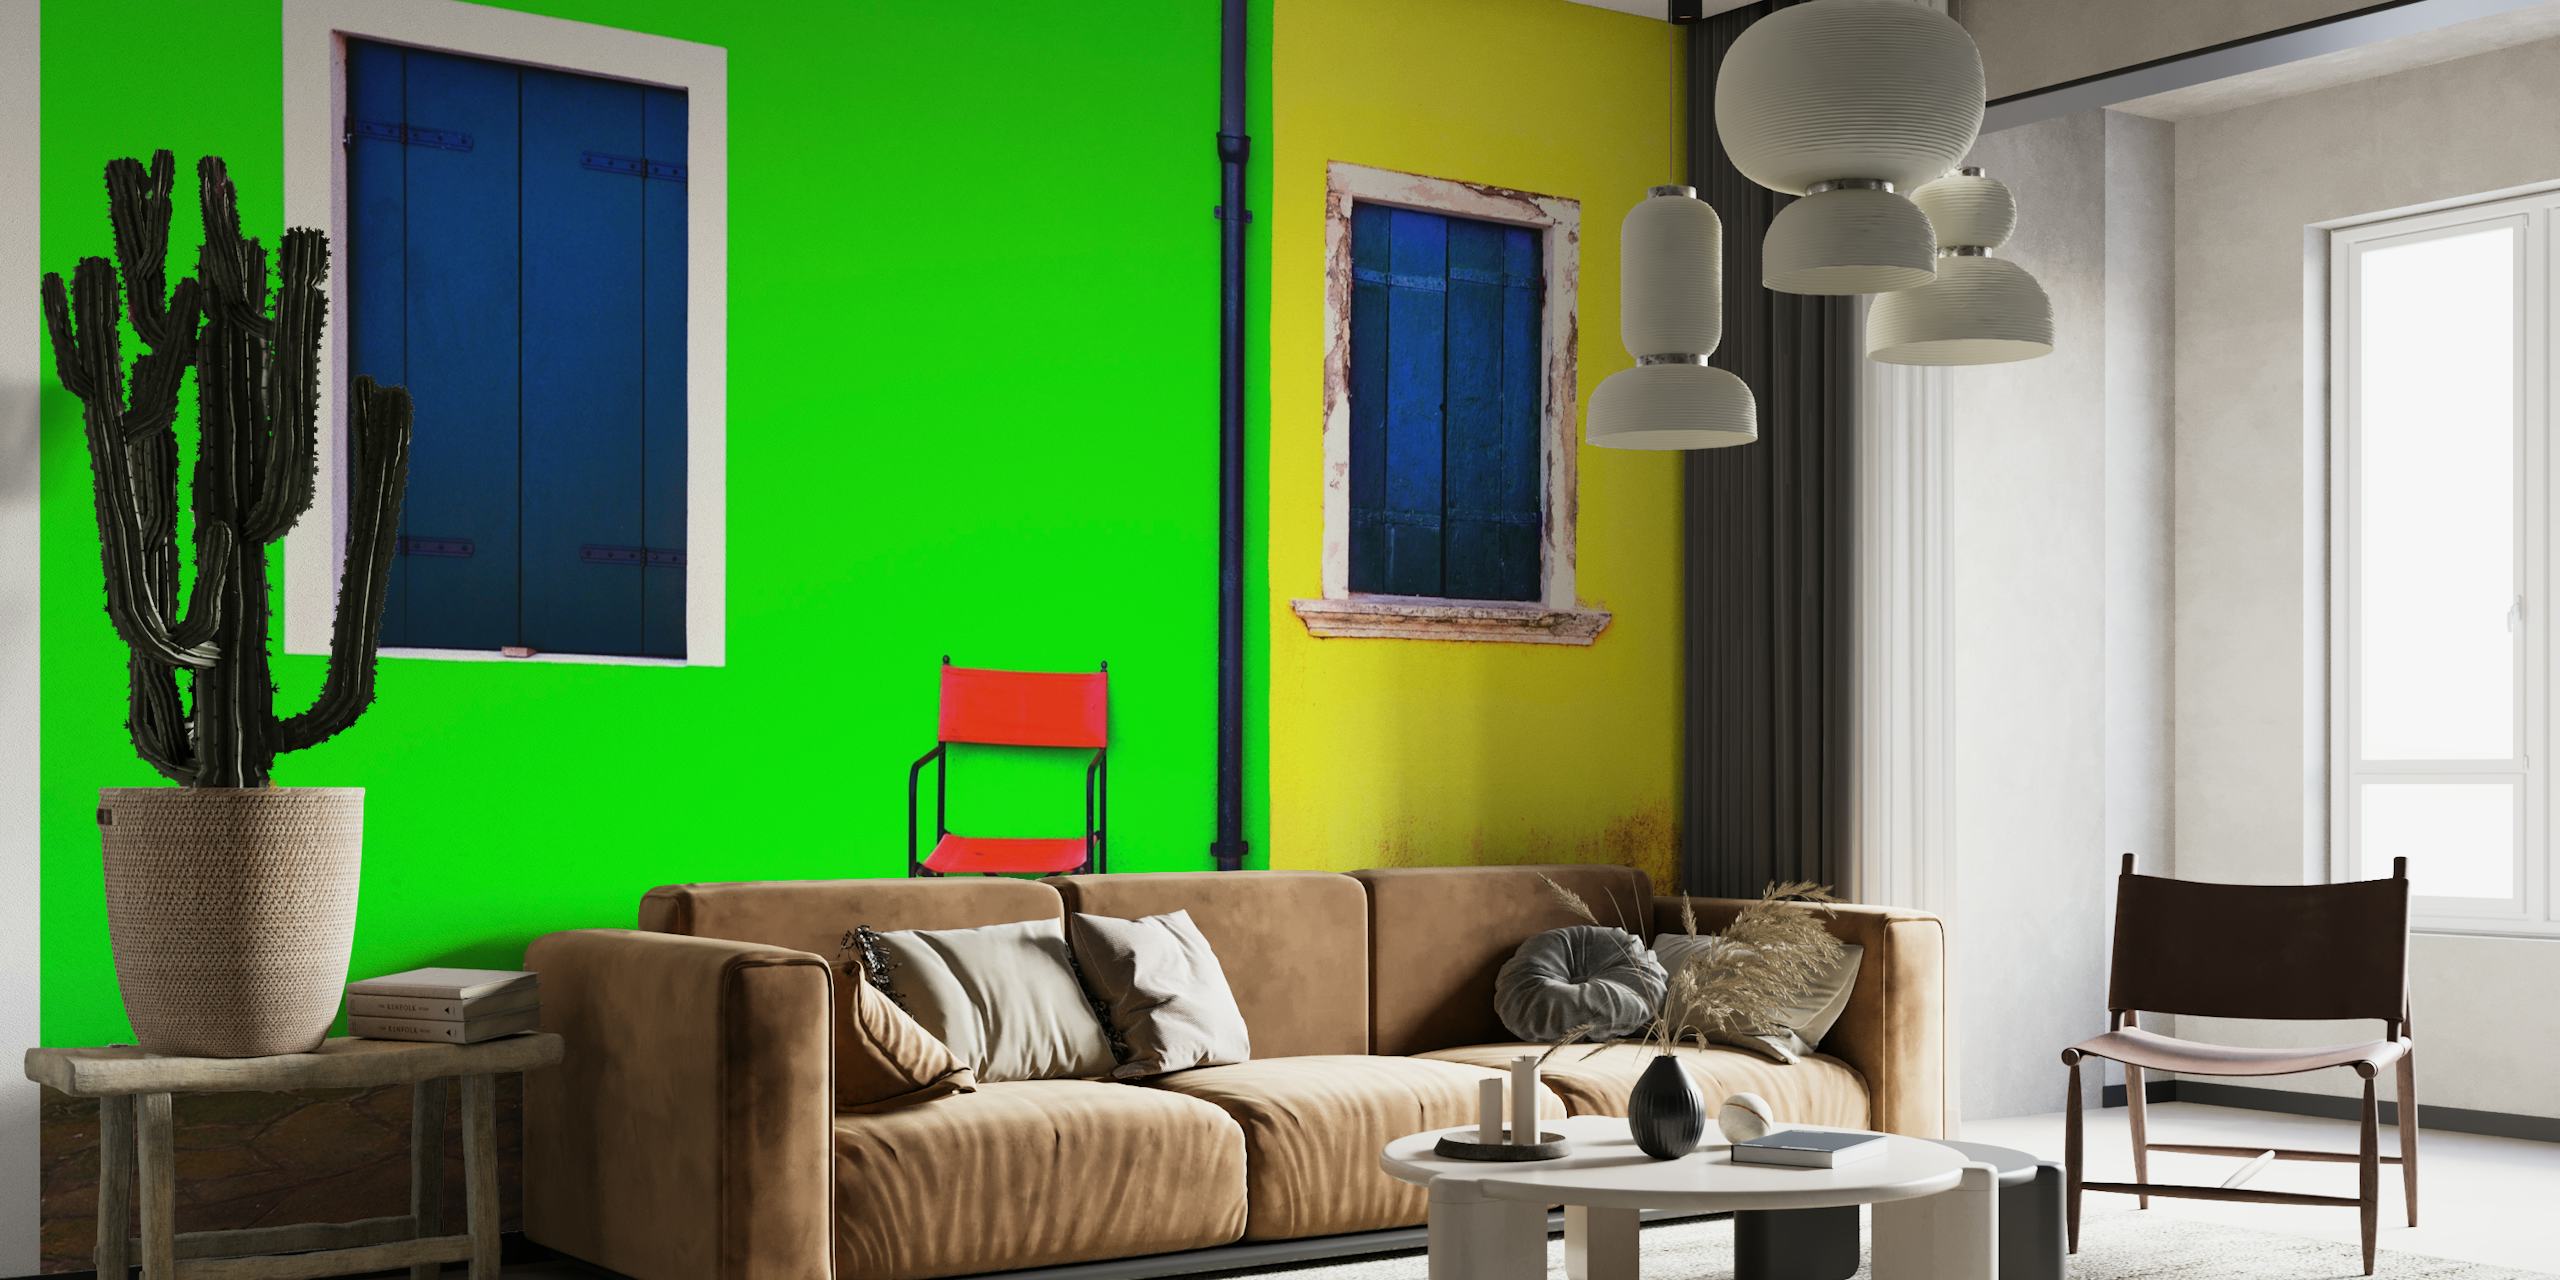 Fedt og minimalistisk vægmaleri med en grøn væg med et blåt vindue, en gul væg med et blåt vindue og en rød stol